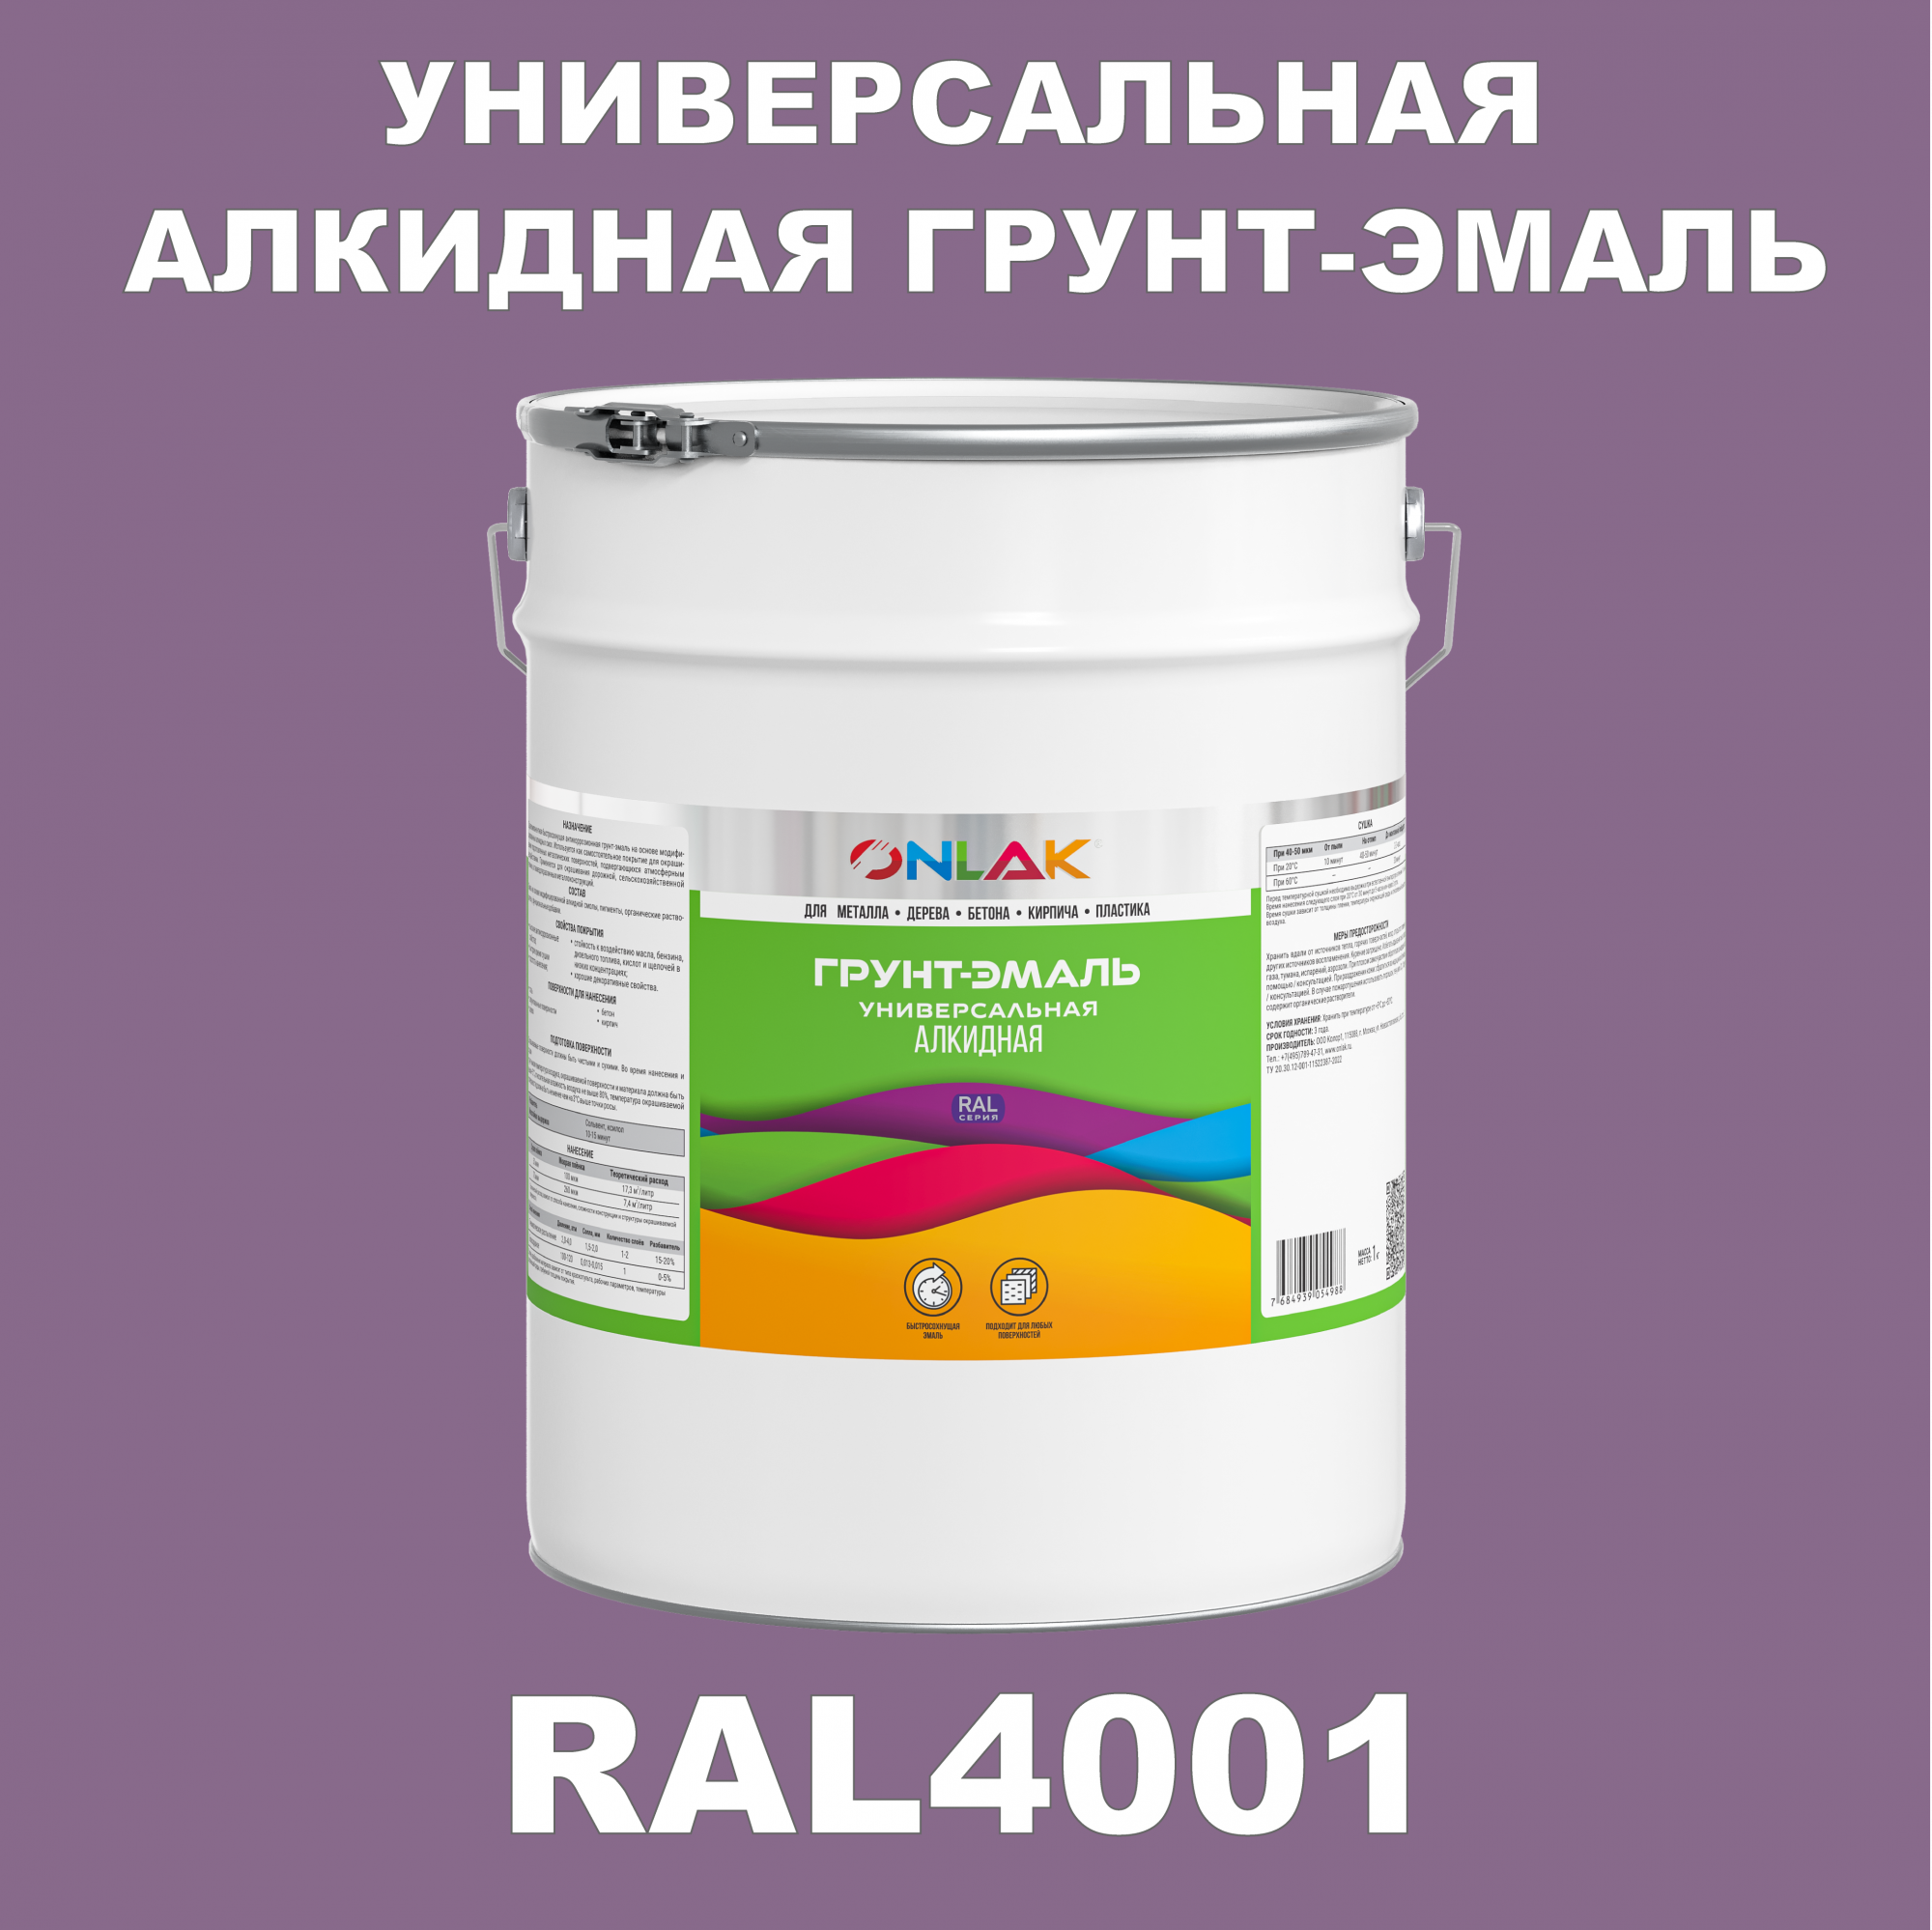 Грунт-эмаль ONLAK 1К RAL4001 антикоррозионная алкидная по металлу по ржавчине 20 кг антикоррозионная грунт эмаль onlak ral 4009 фиолетовый 593 мл